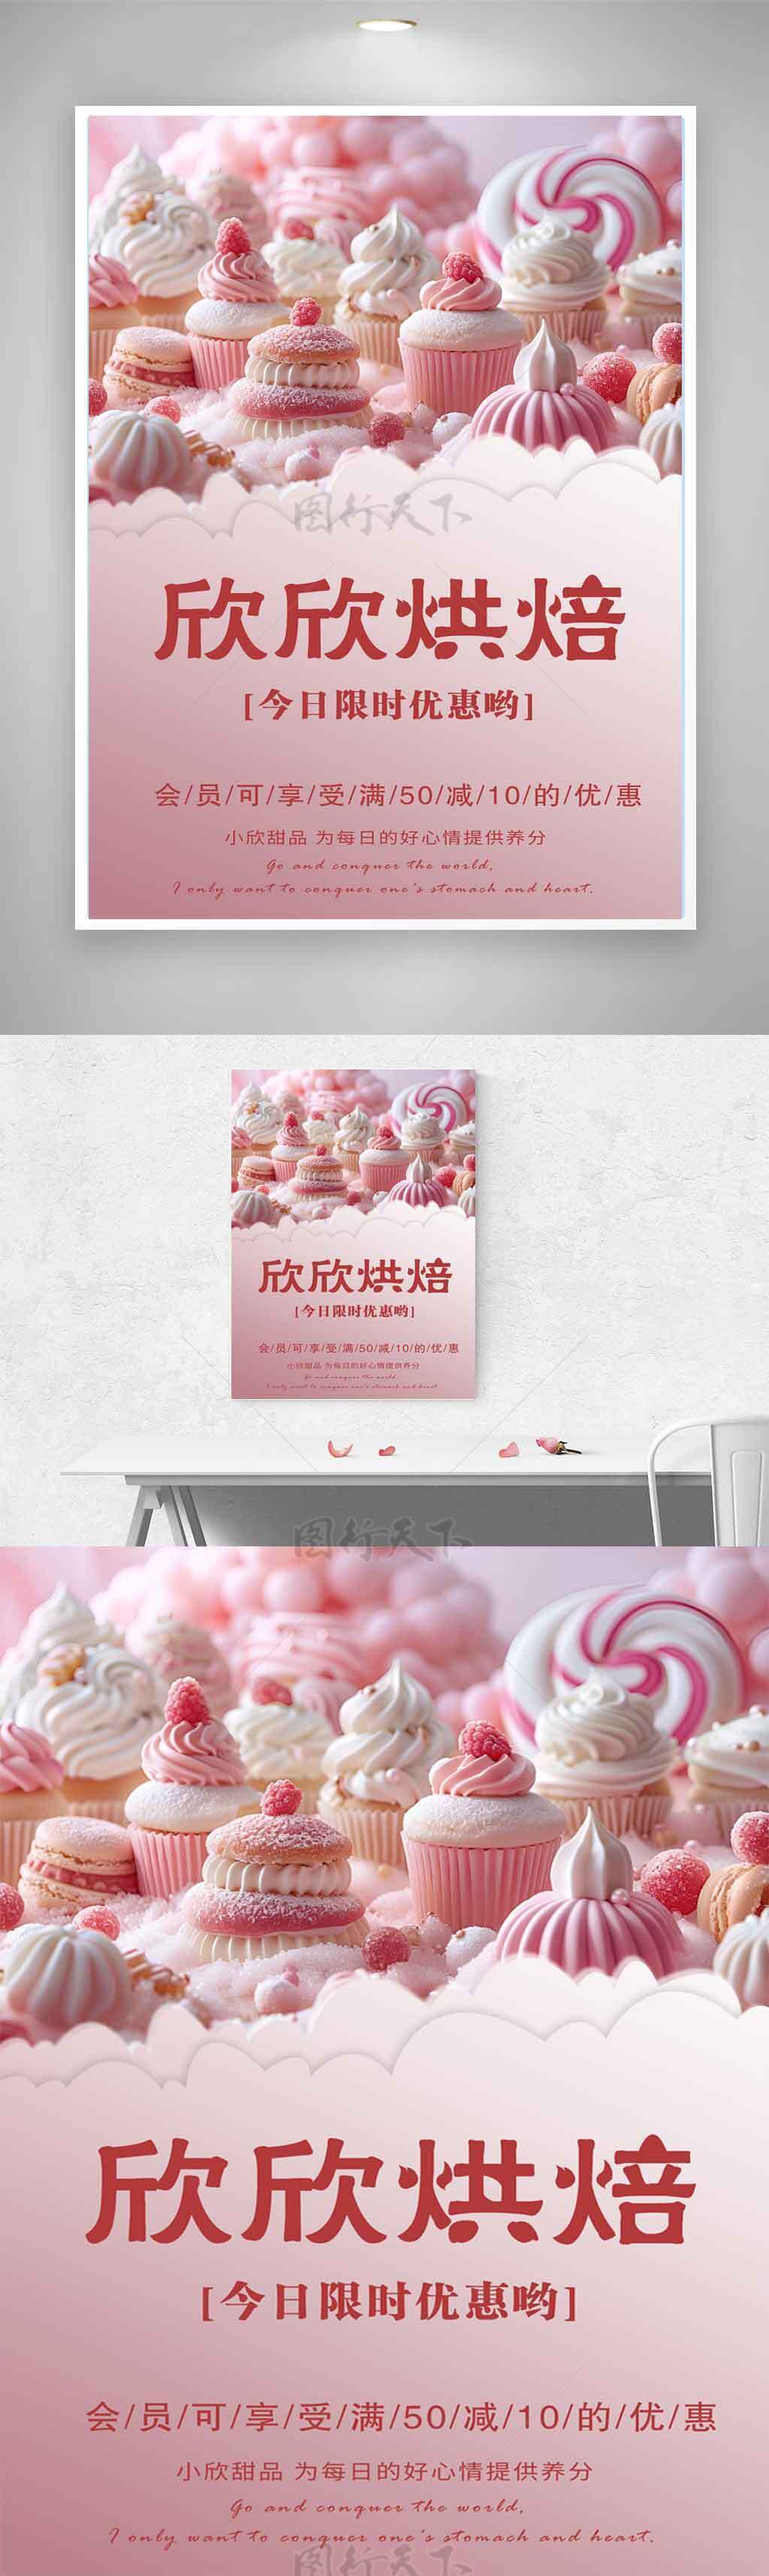 粉色甜品蛋糕下午茶精致海报